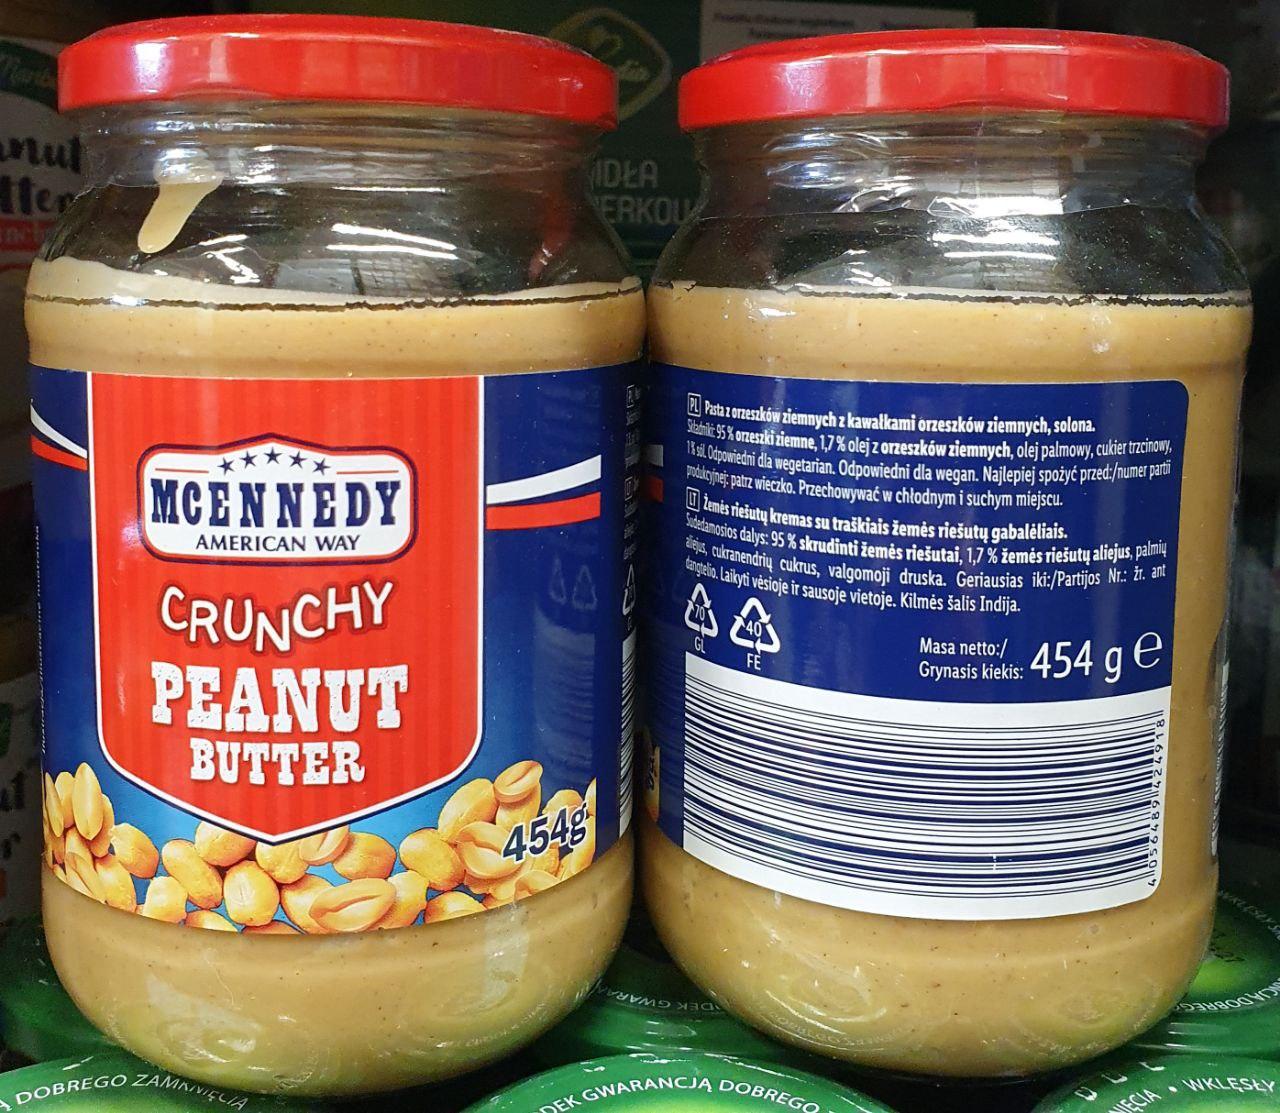 Crunchy Інтернет-магазин солодощі продукти Mcennedy Peanut gr, в цінами — доступними паста Torgcentr 454 butter, Арахісова Польща. Україні. харчування за Купити